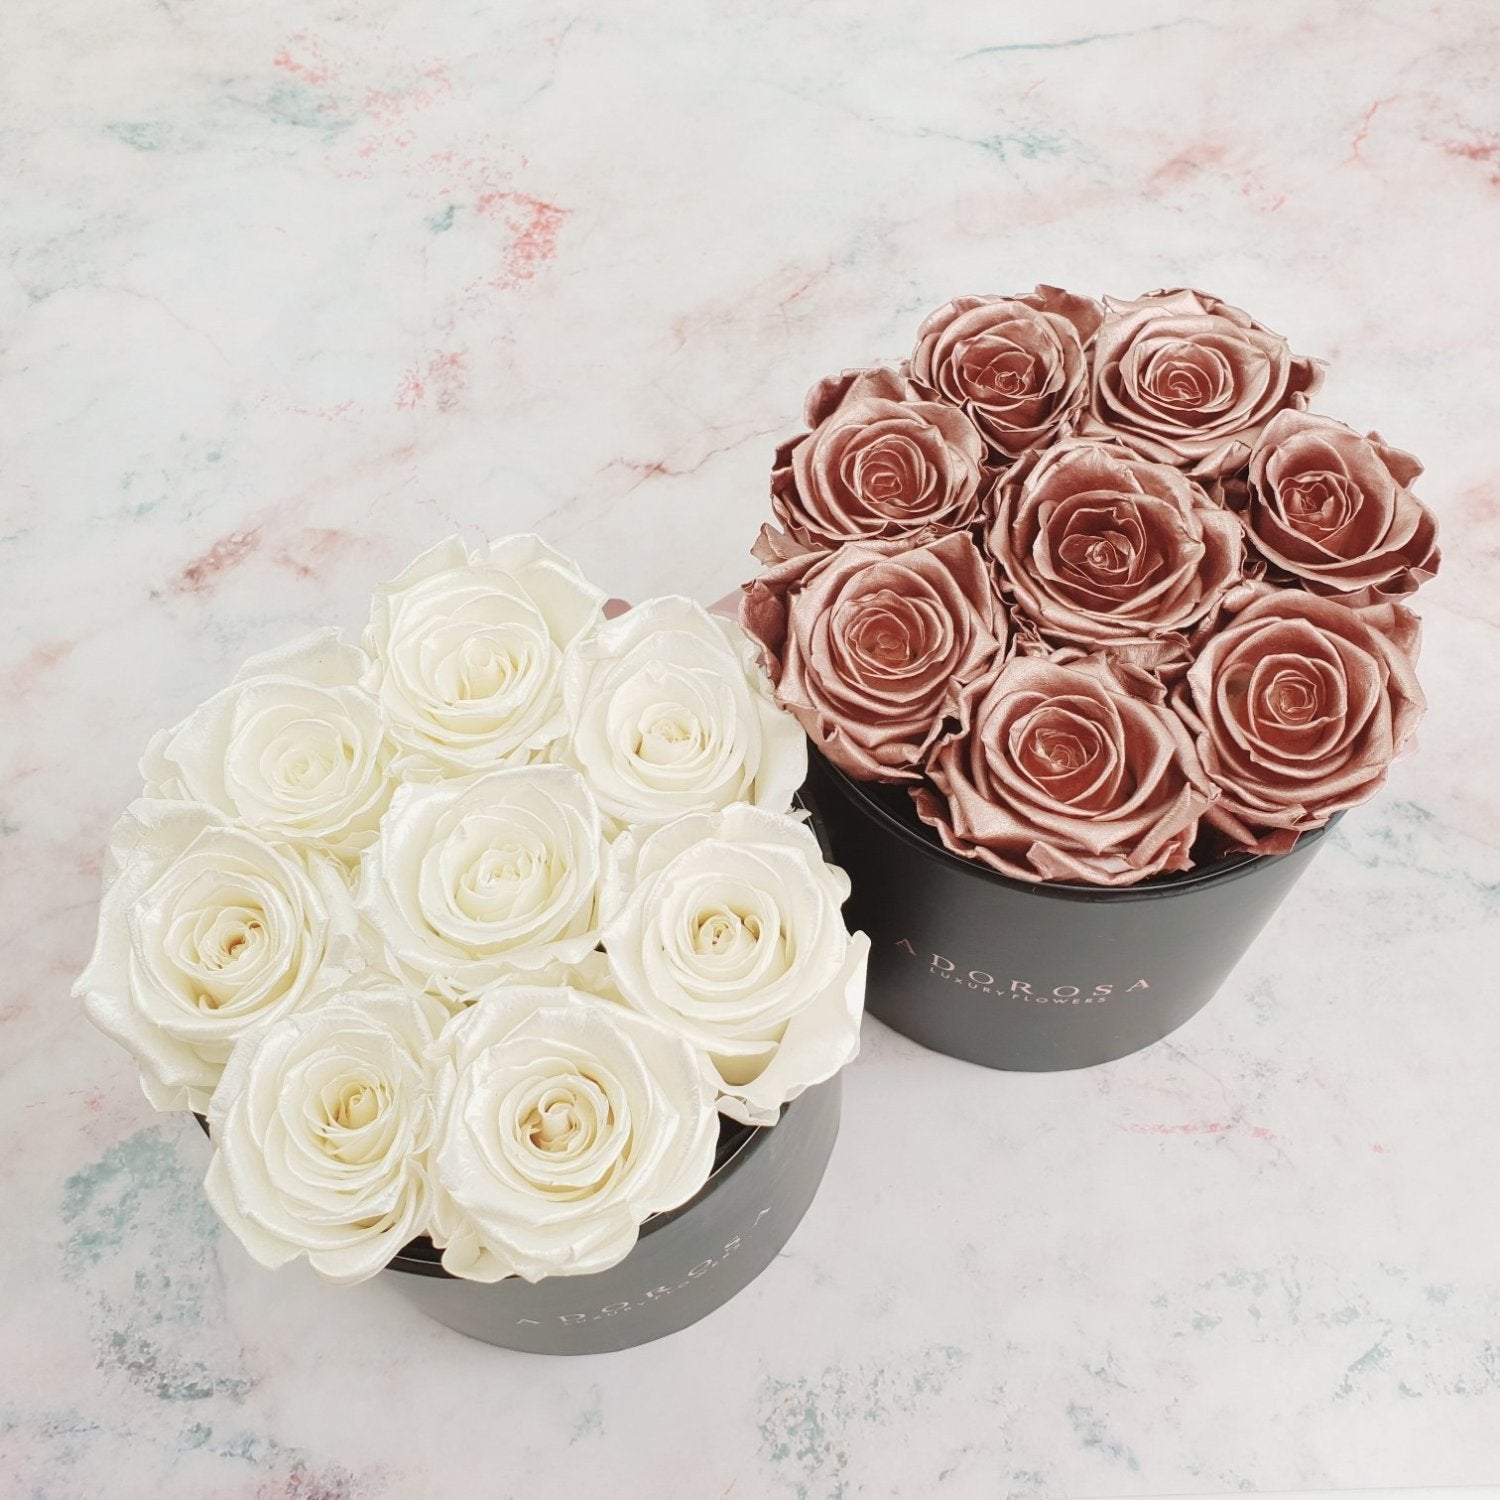 gold rose, white rose, sydney rose delivery, rose box sydney, long lasting rose, forever rose, eternity rose, luxury rose box sydney